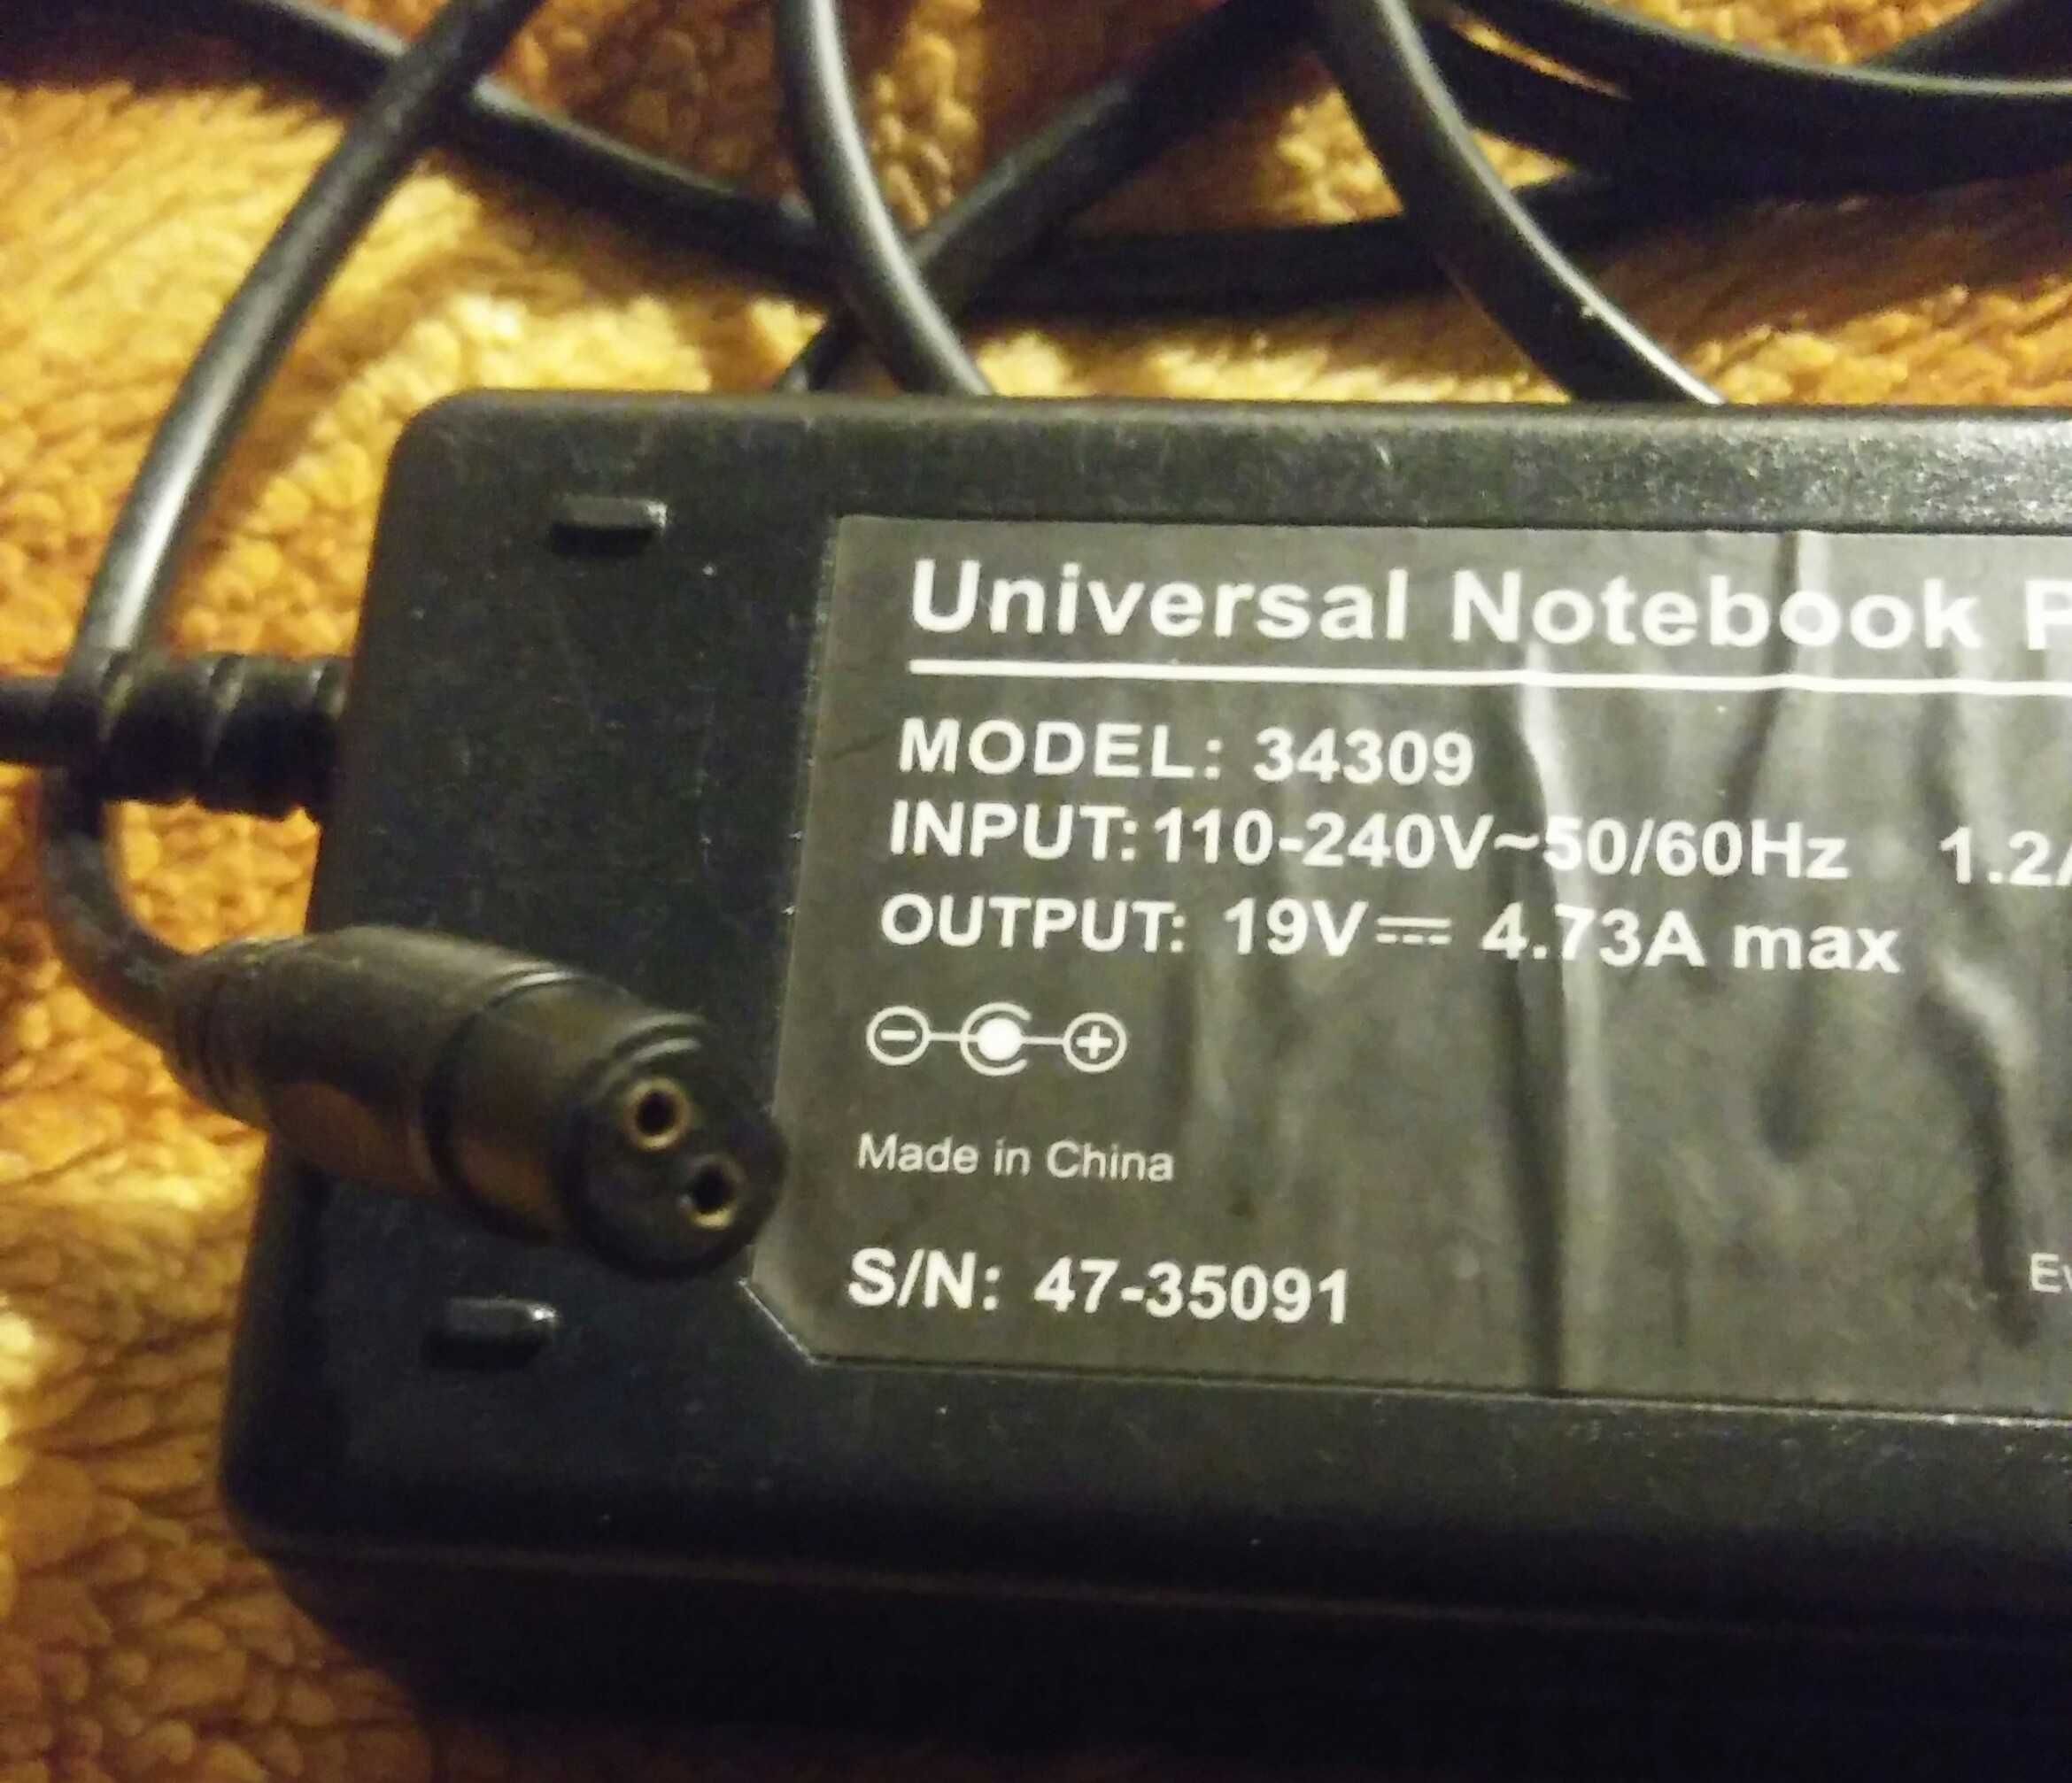 Universal notebook power supply 19v model 34309 zasilacz